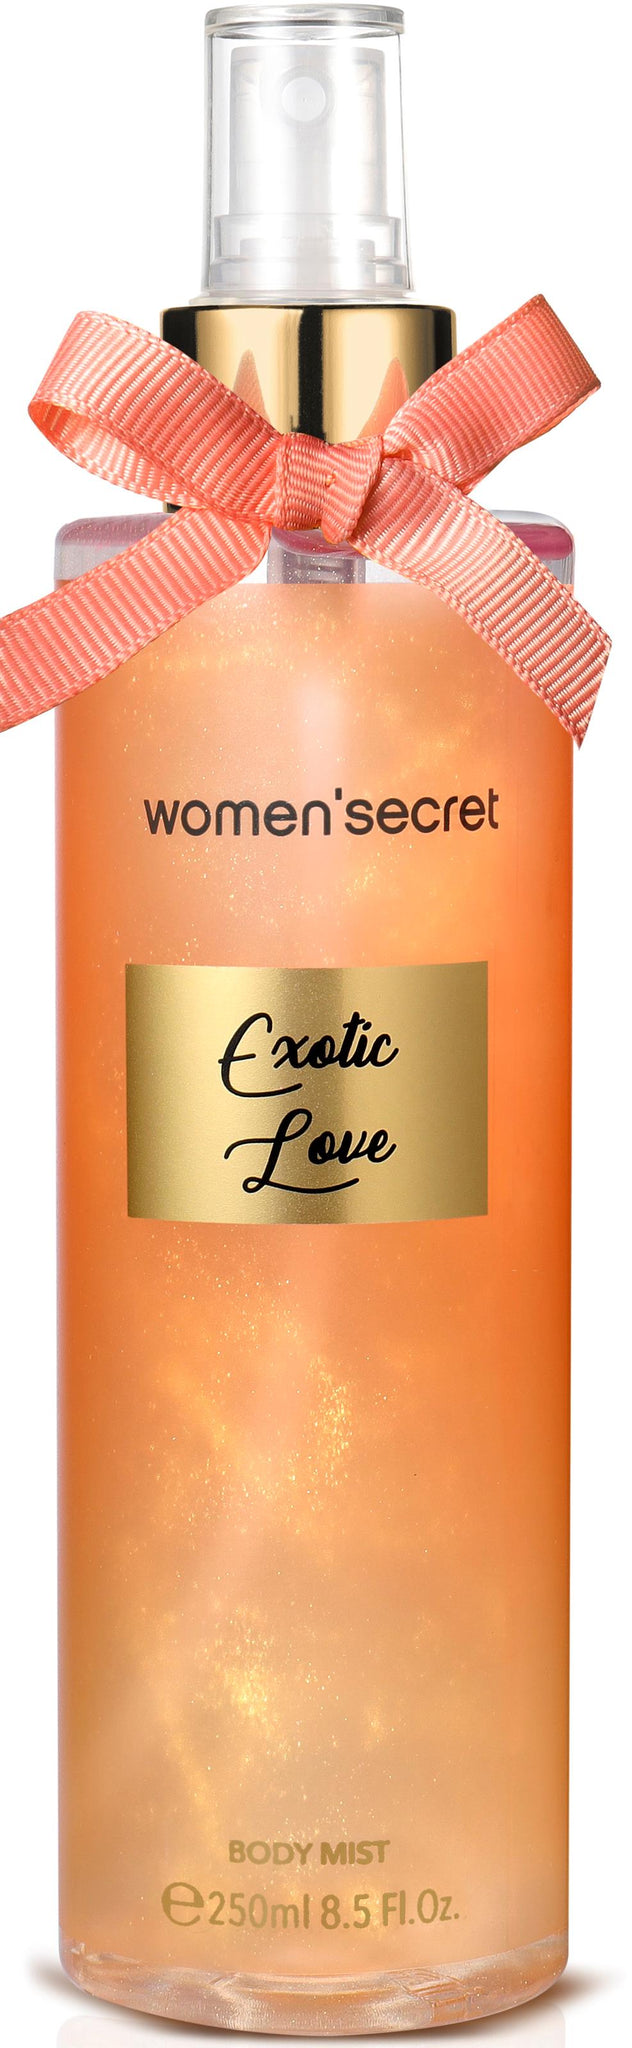 Buy Women's Secret Exotic Love Body Mist - 250ml in Pakistan